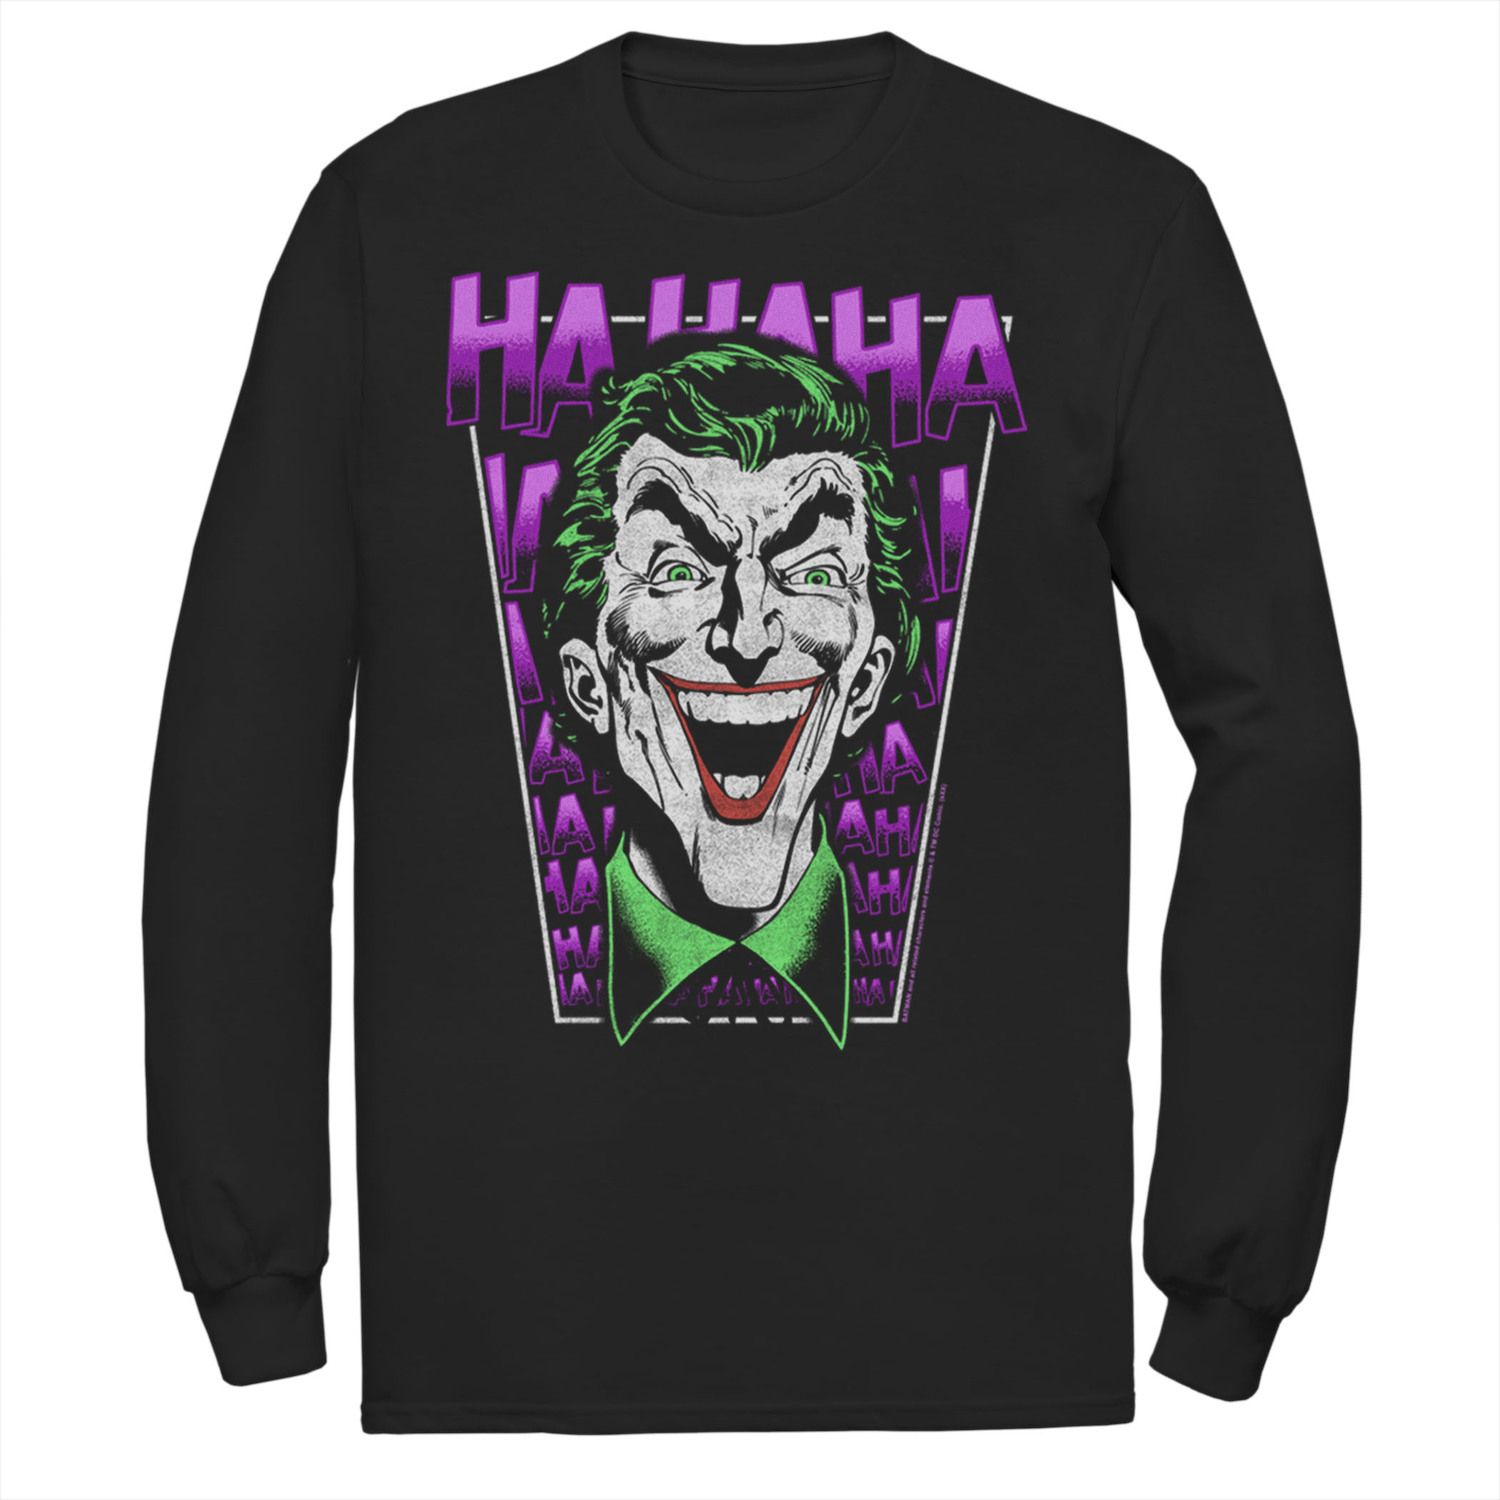 Мужская футболка DC Comics The Joker HAHAHA с большим лицом